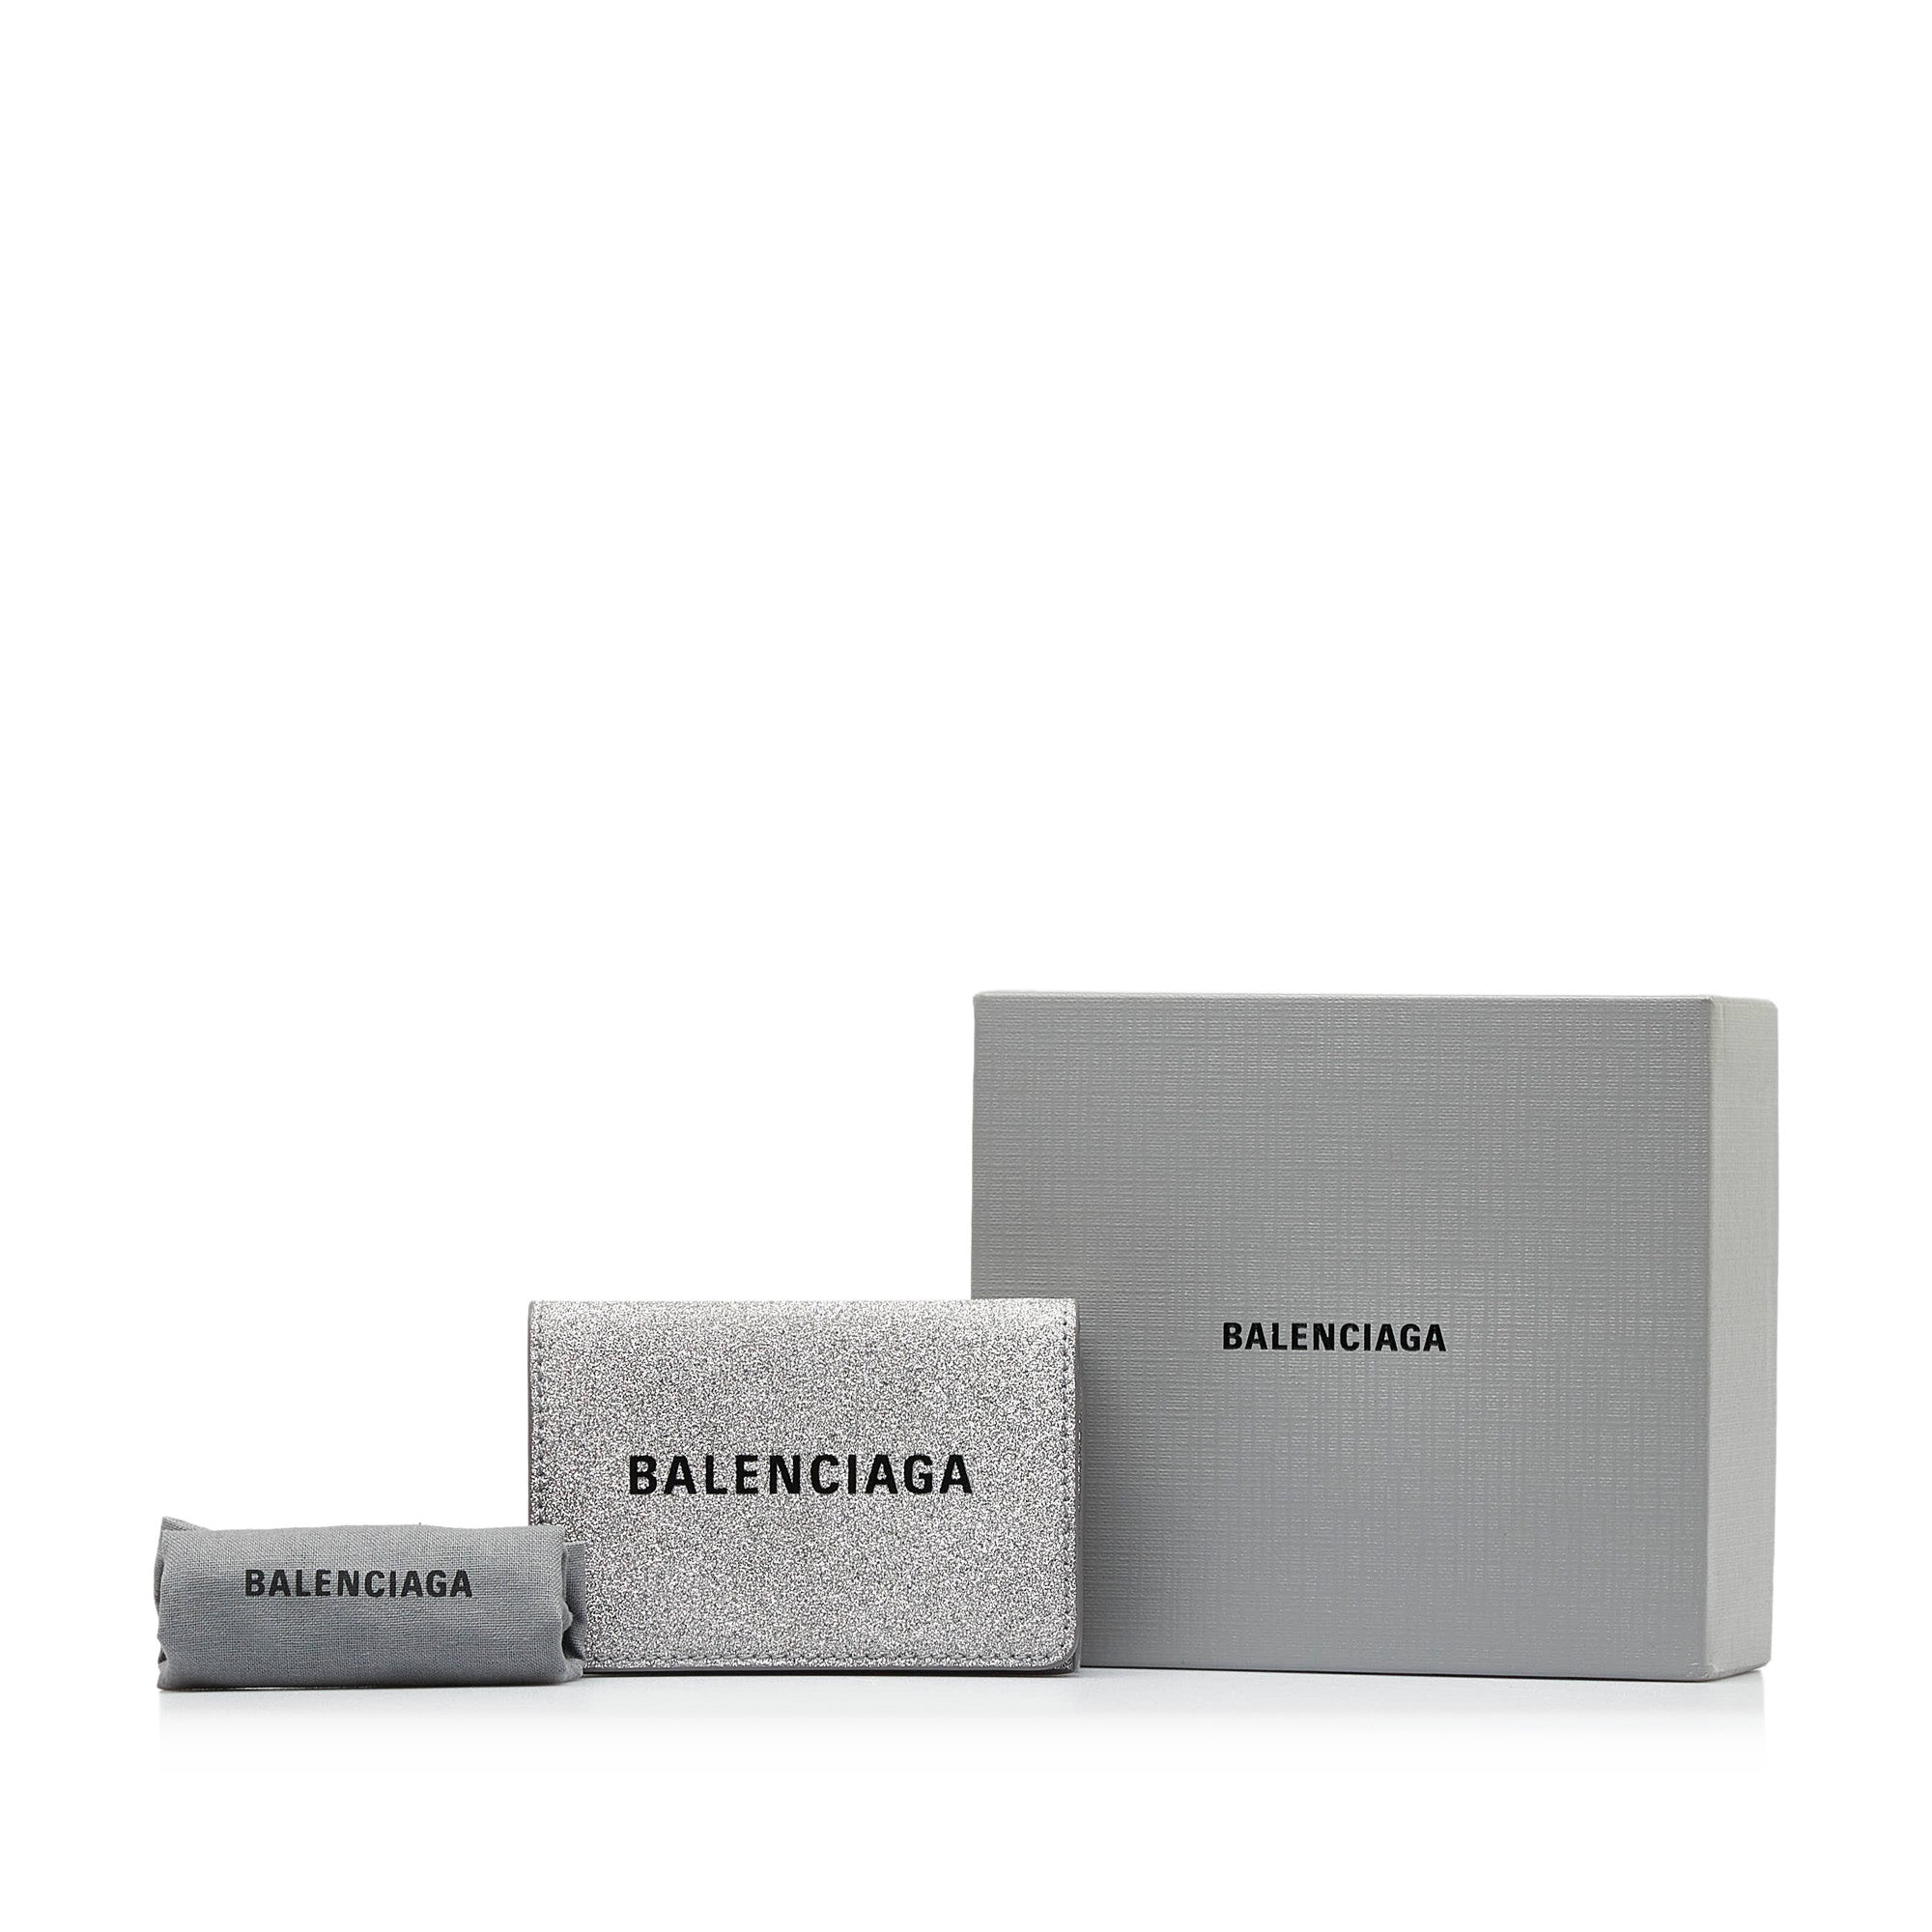 Luxury wallet - Balenciaga mini wallet in black leather with white logo